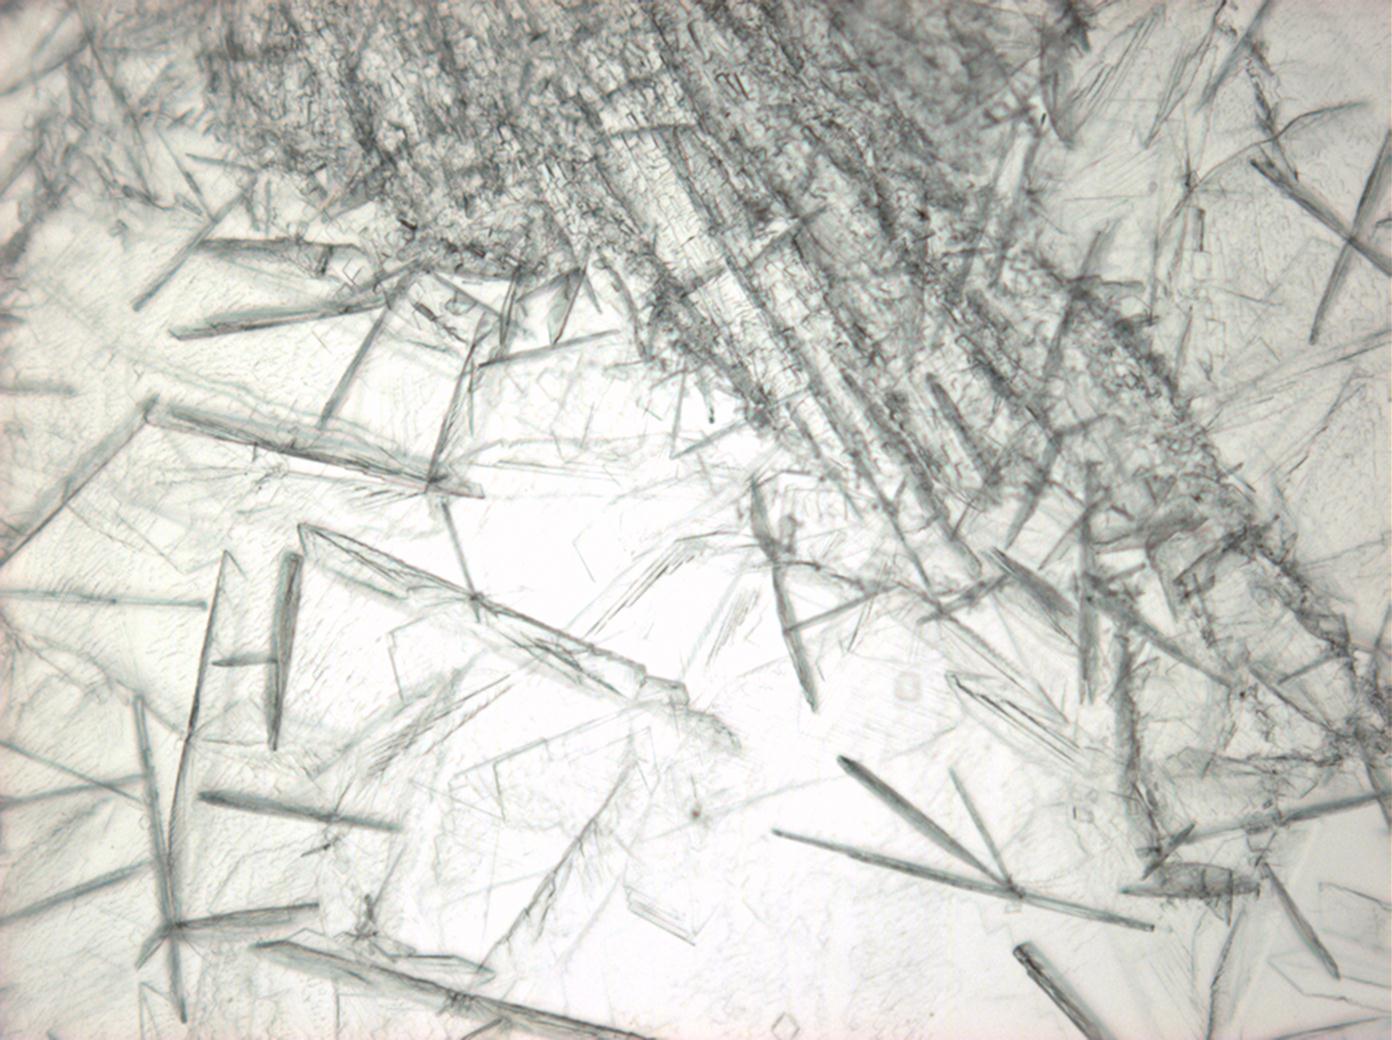 Abbildung 4: Calciumchloridkristalle unter polarisiertem Licht